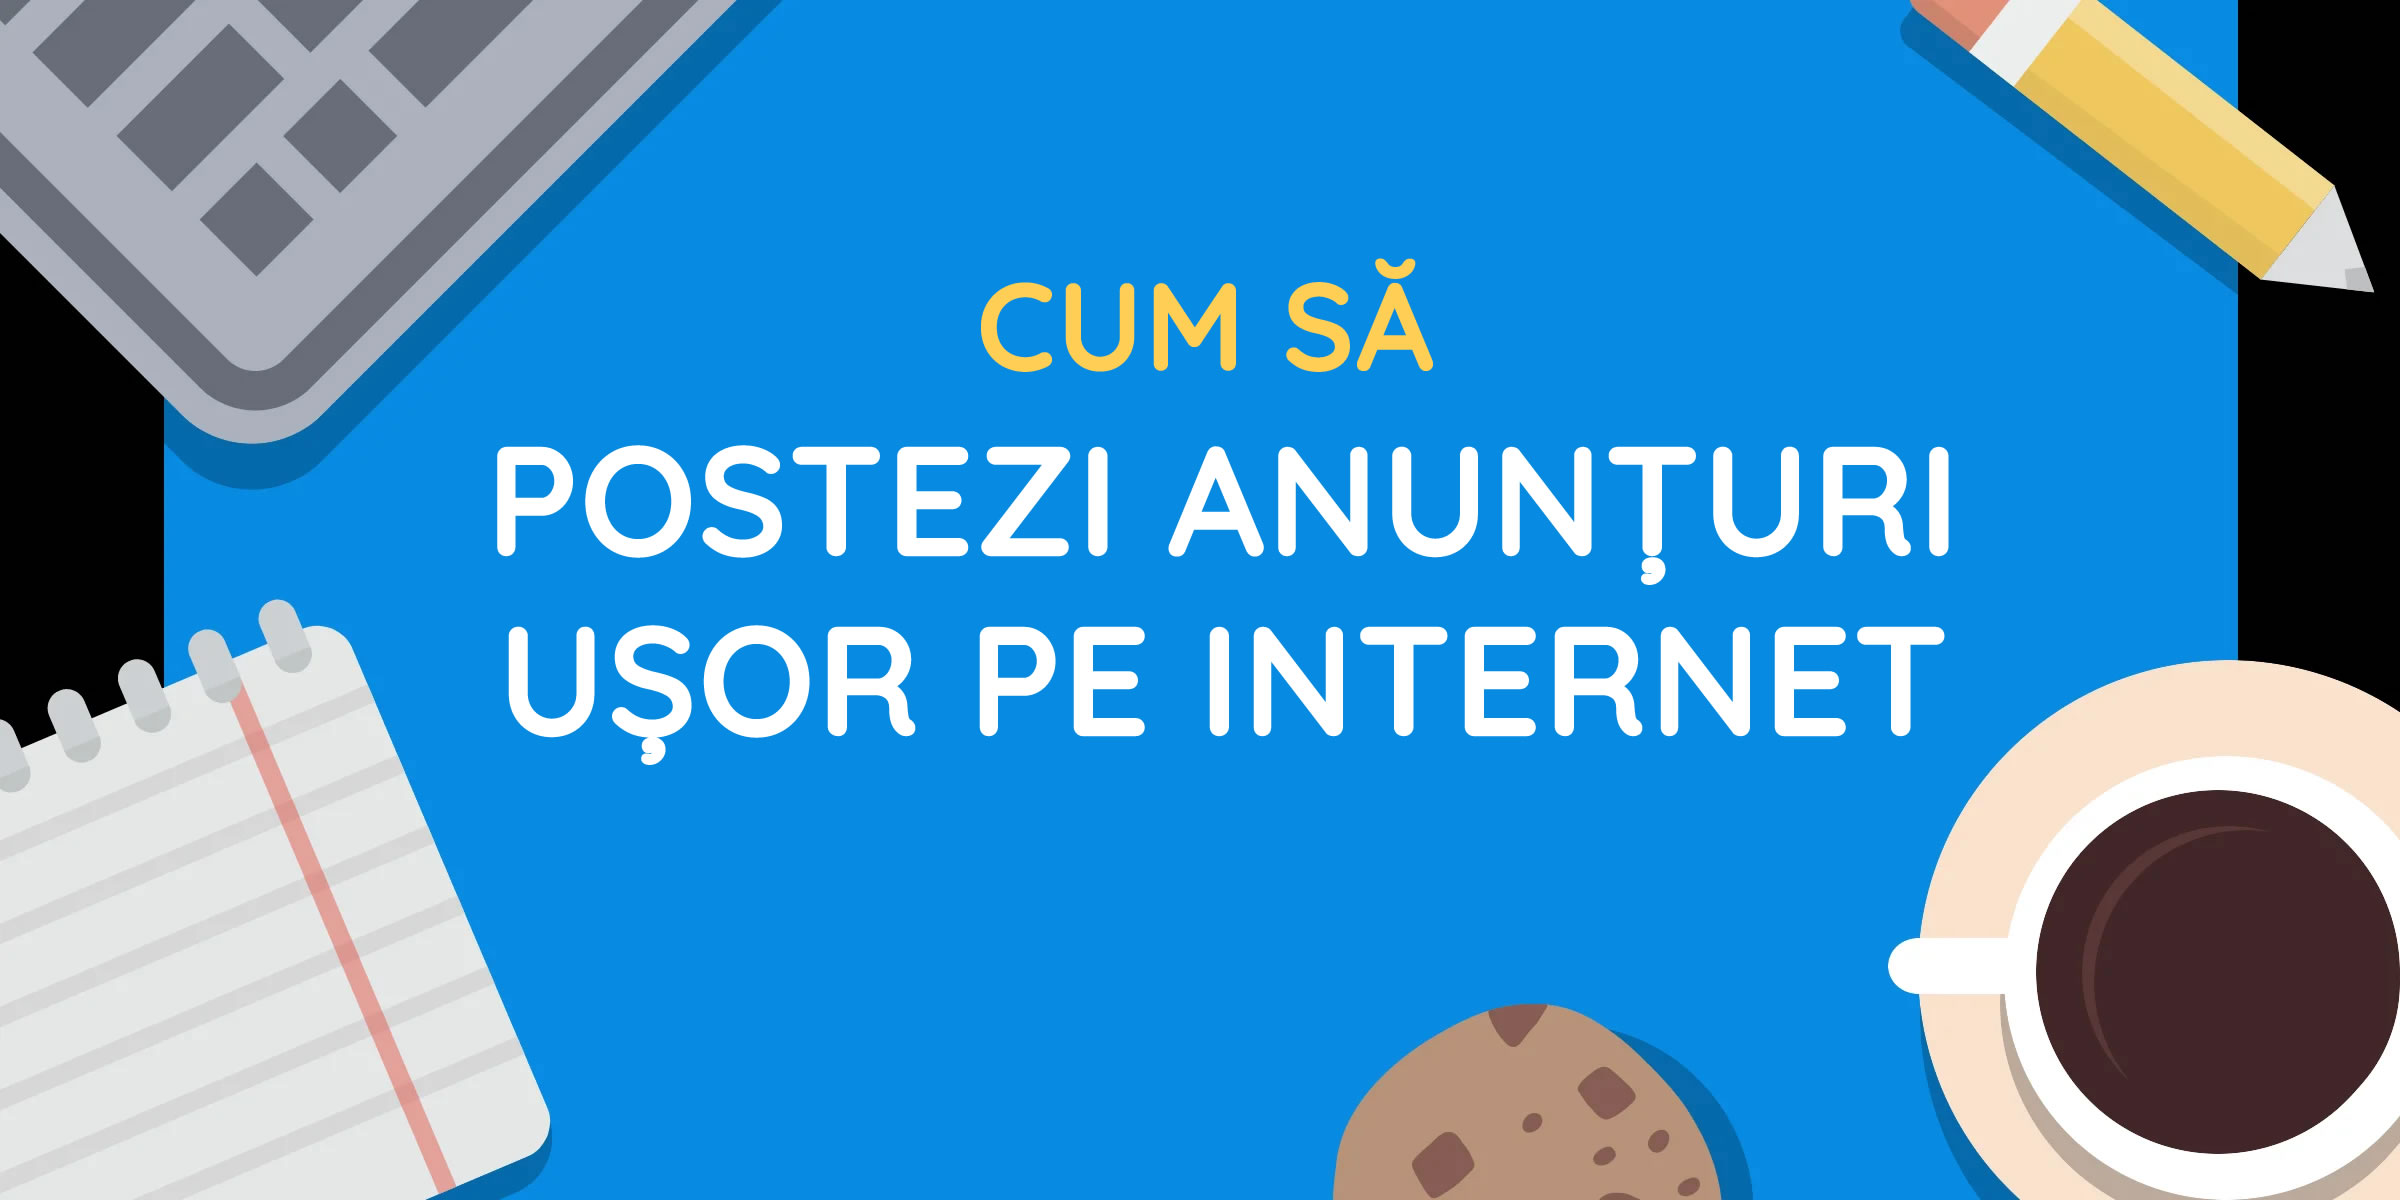 Cum să postezi anunțuri pe internet ușor în România